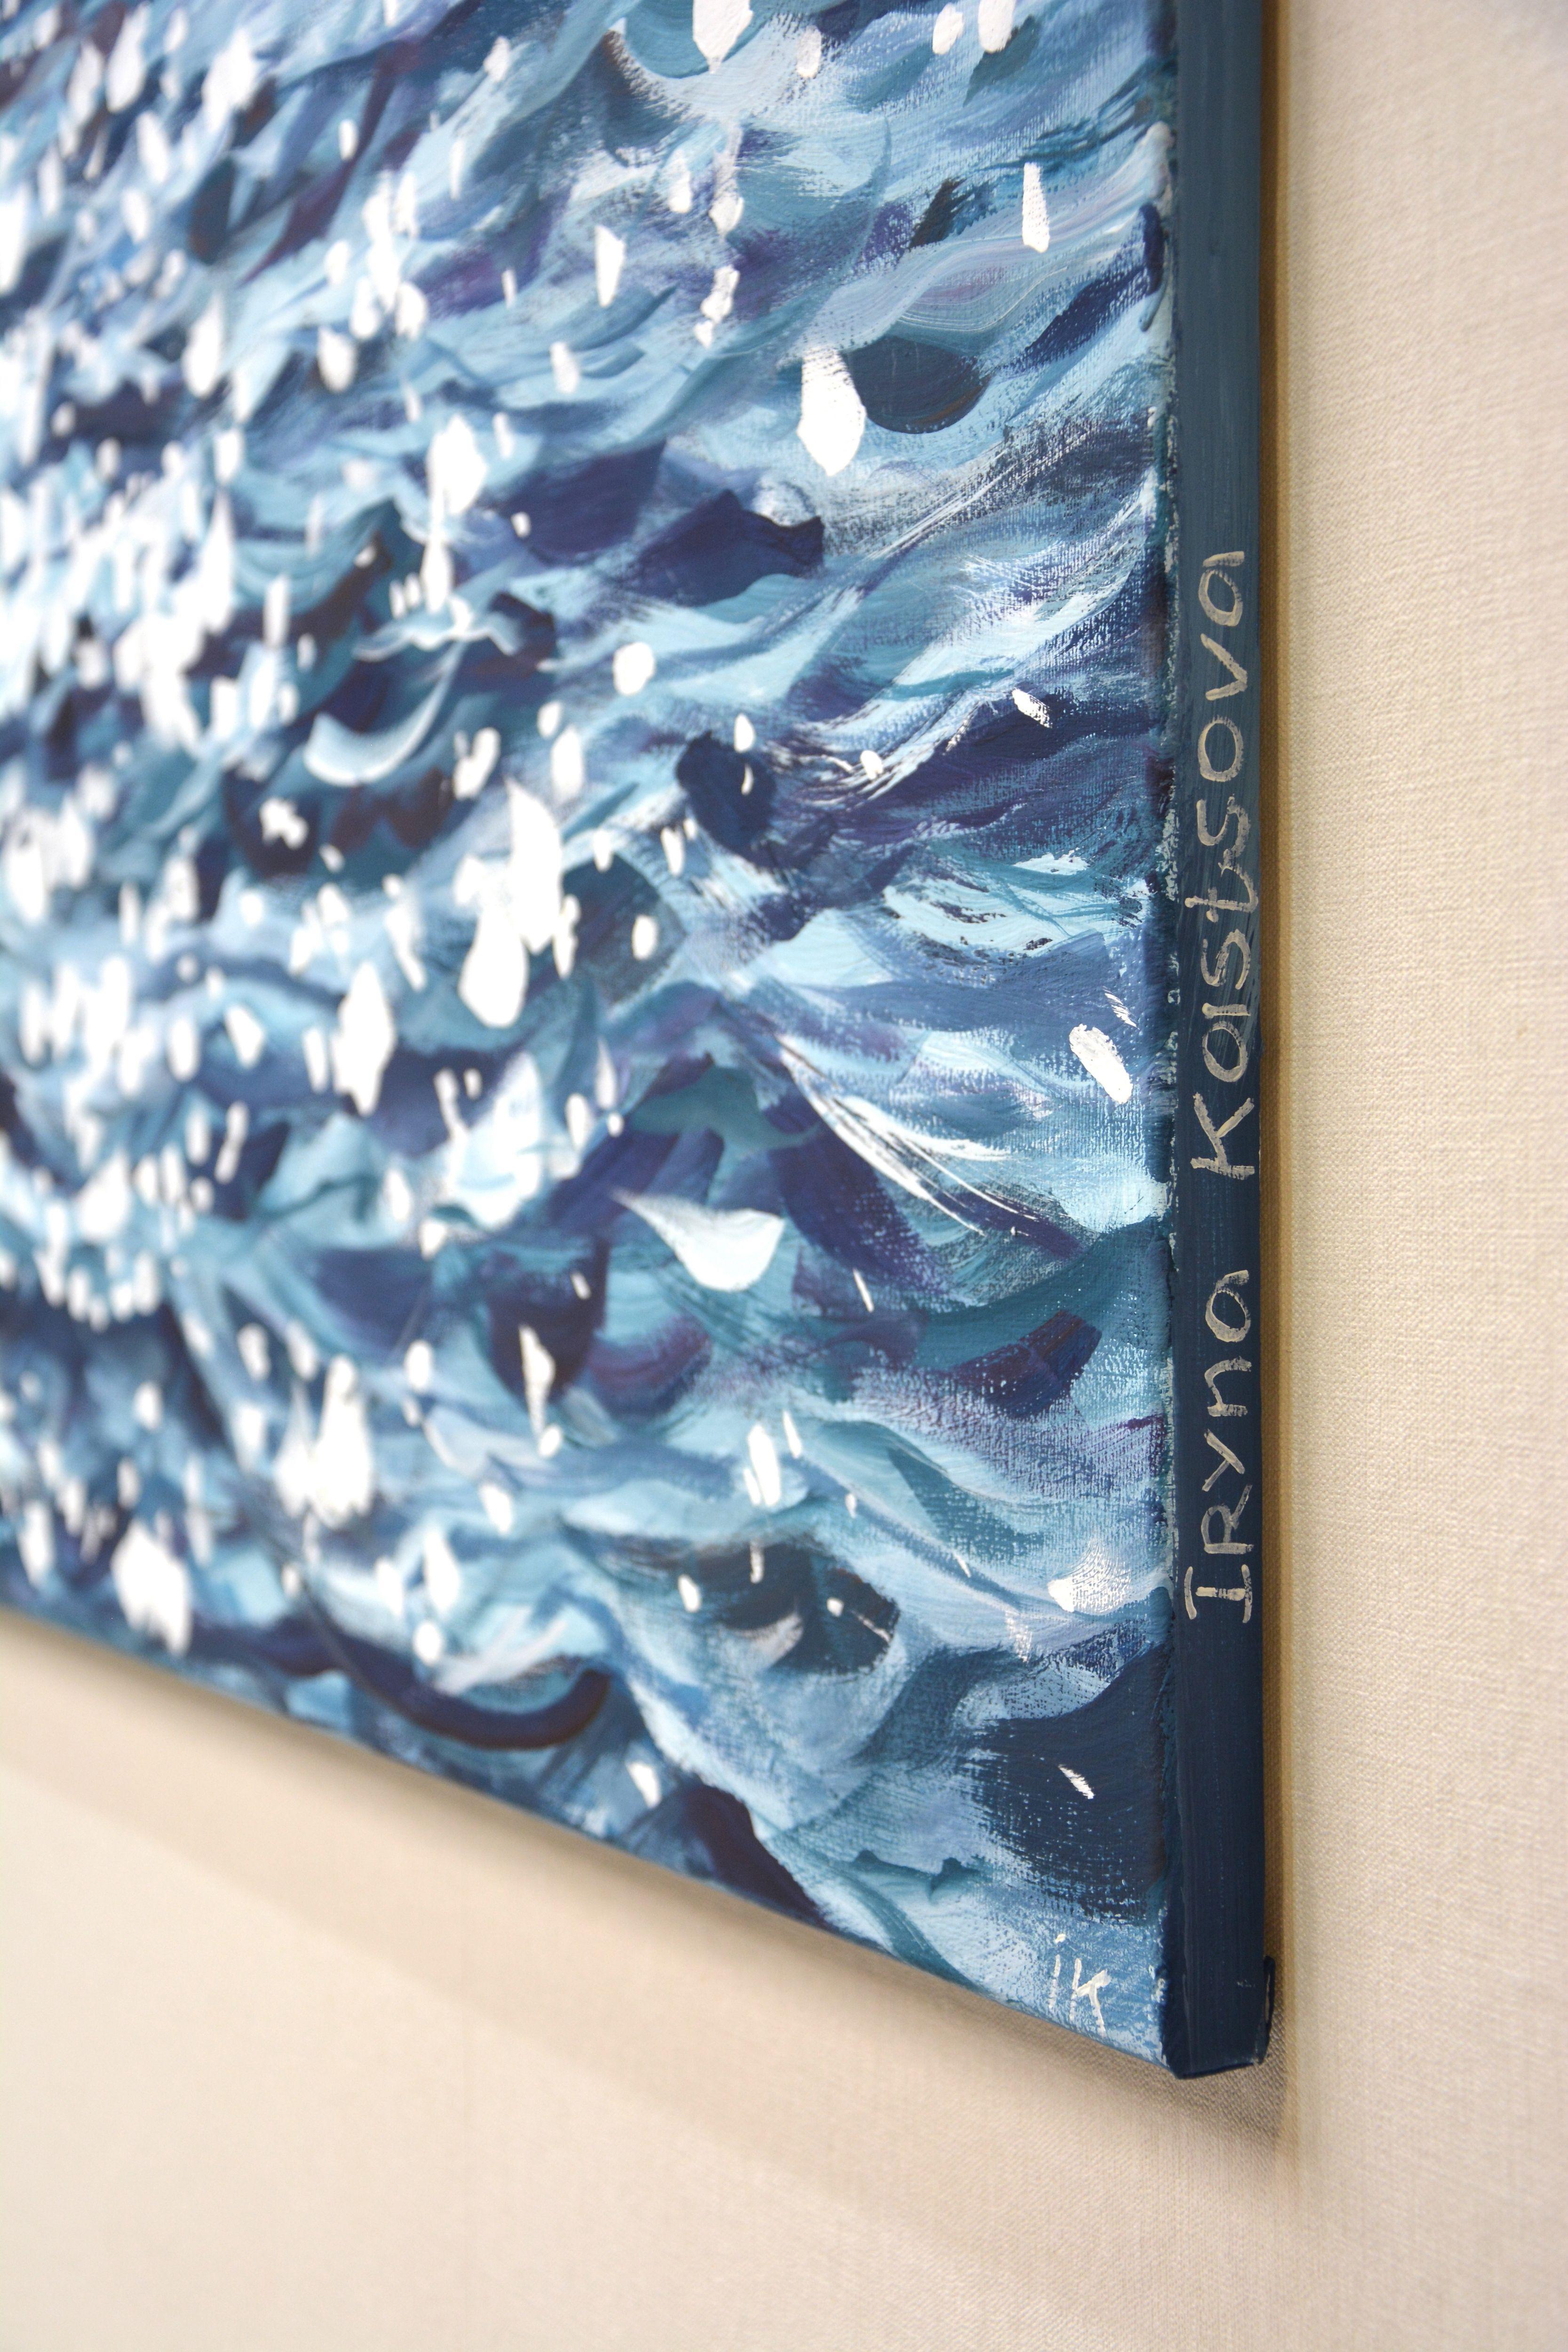 Ocean magic, Painting, Acrylic on Canvas 4